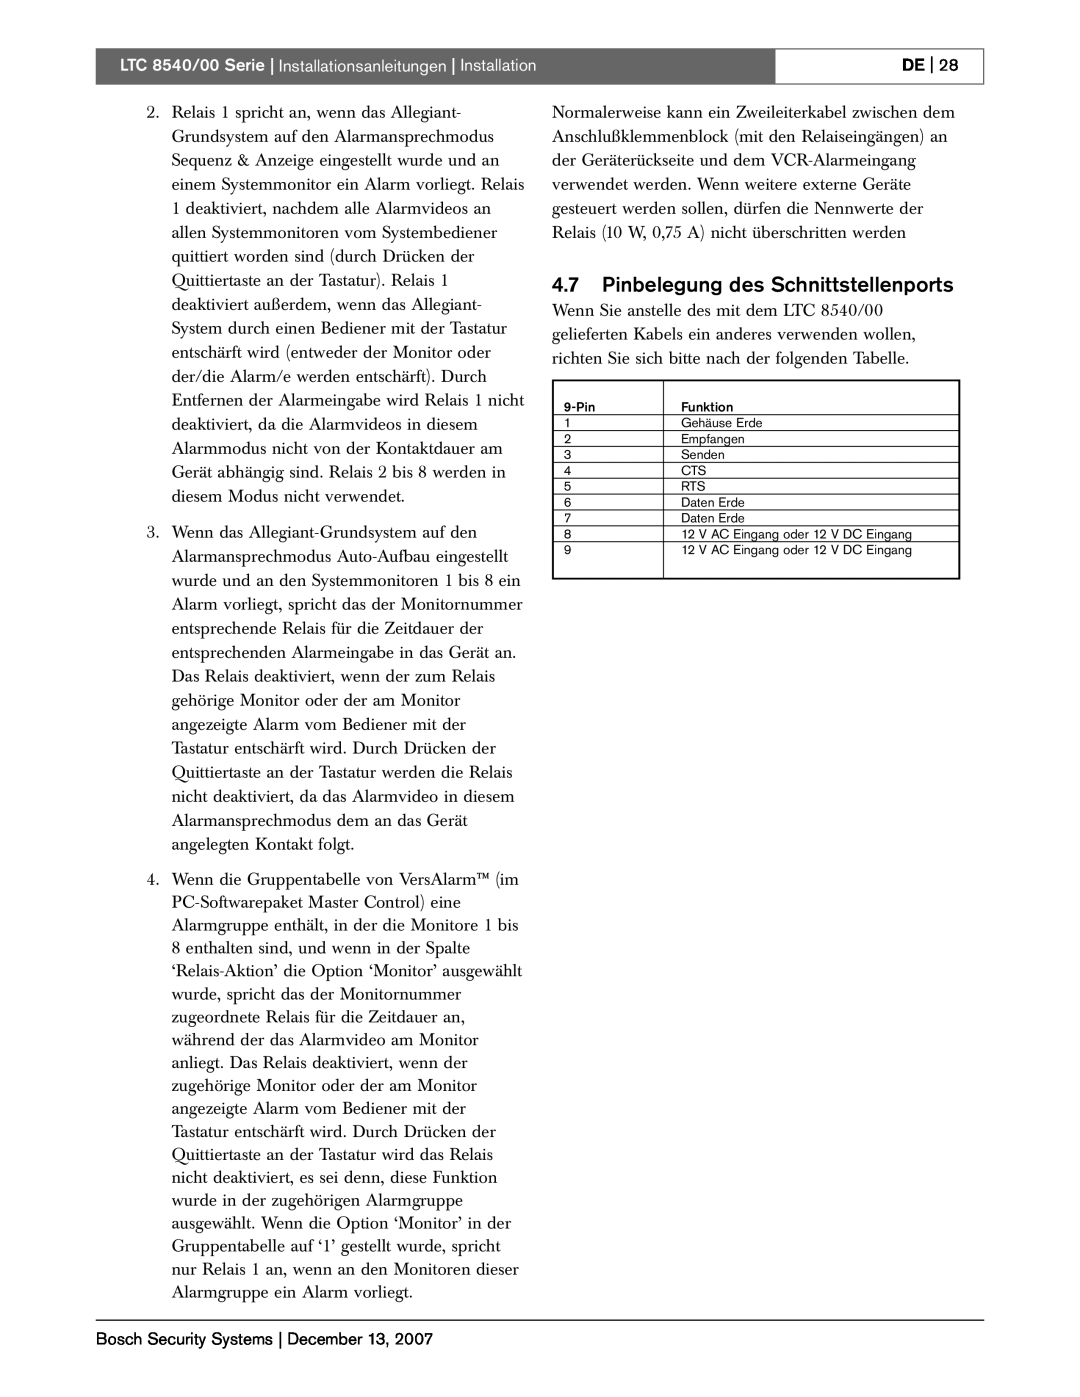 Bosch Appliances LTC 8540/00 instruction manual 4.7Pinbelegung des Schnittstellenports, De 